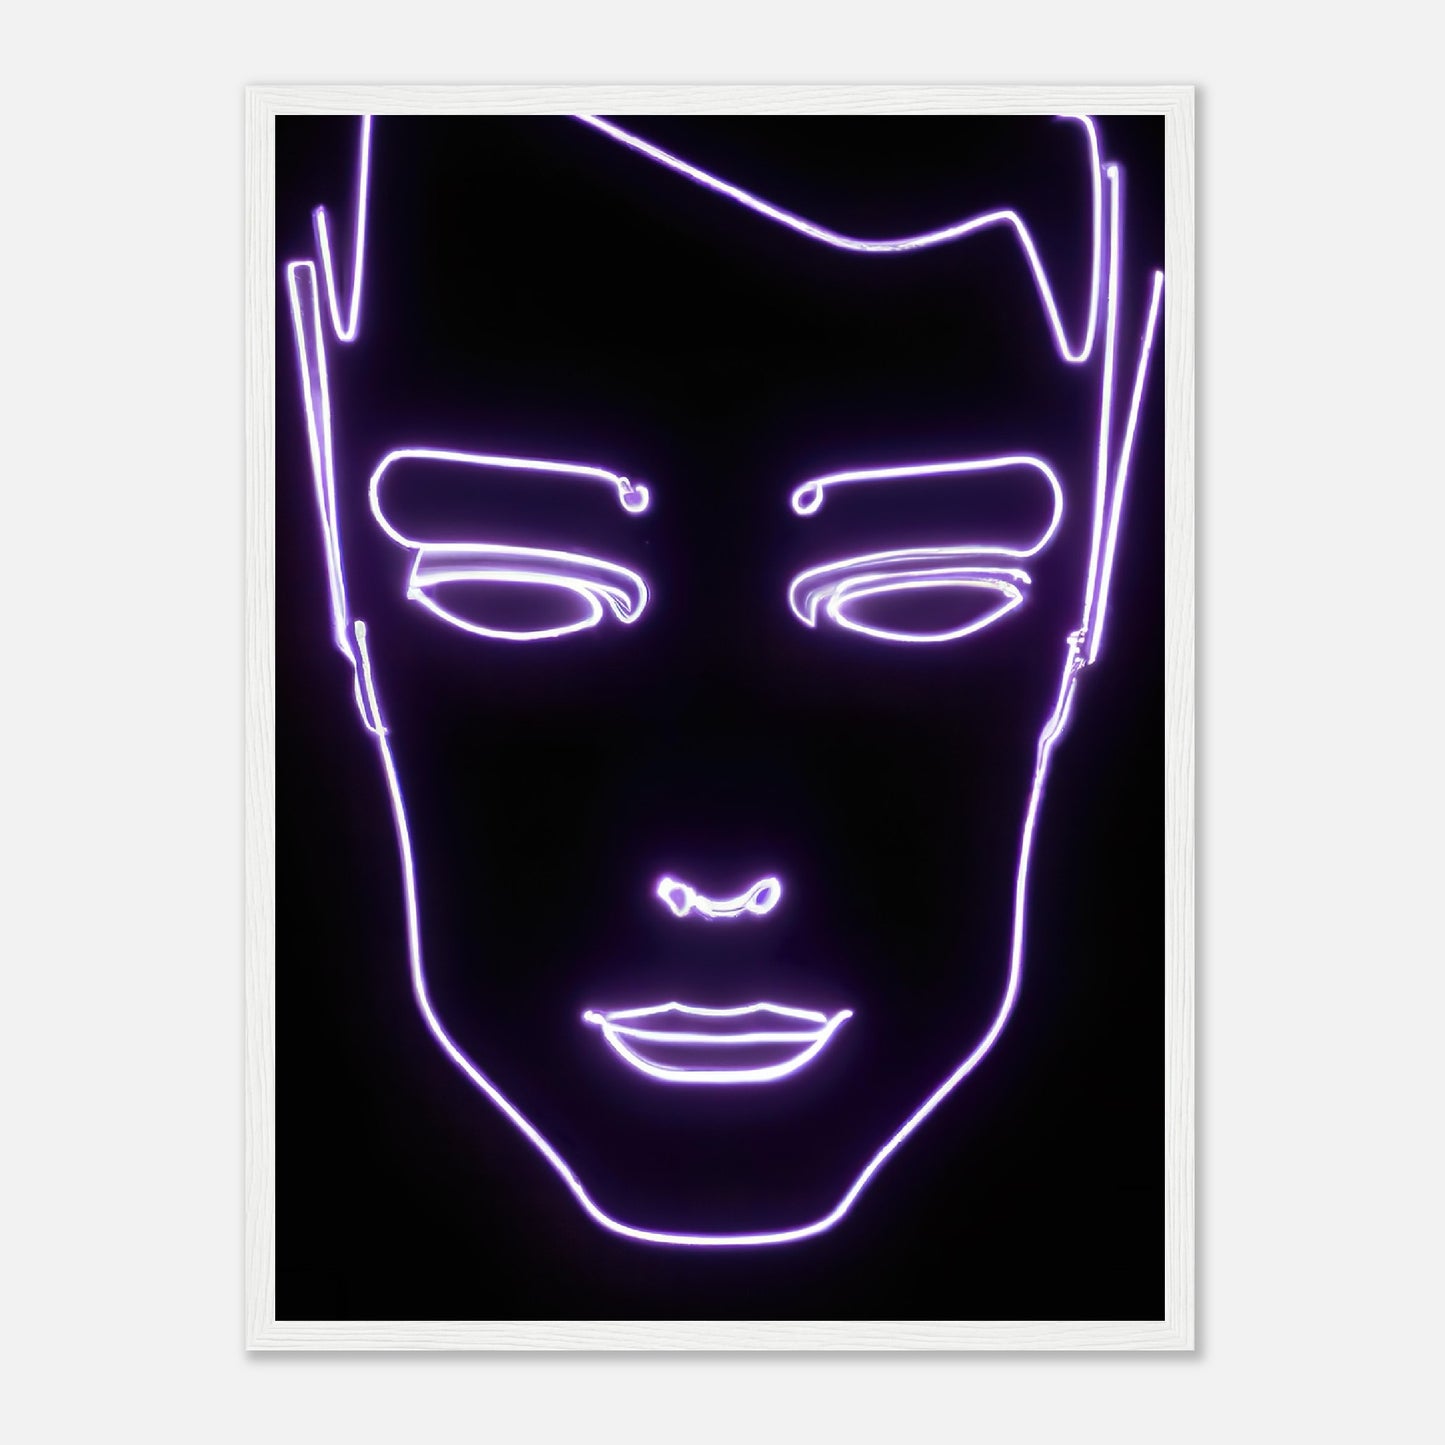 Gerahmtes Premium-Poster - Männliches Gesicht - Neon Stil, KI-Kunst - RolConArt, Neon, 45x60-cm-18x24-Weiß